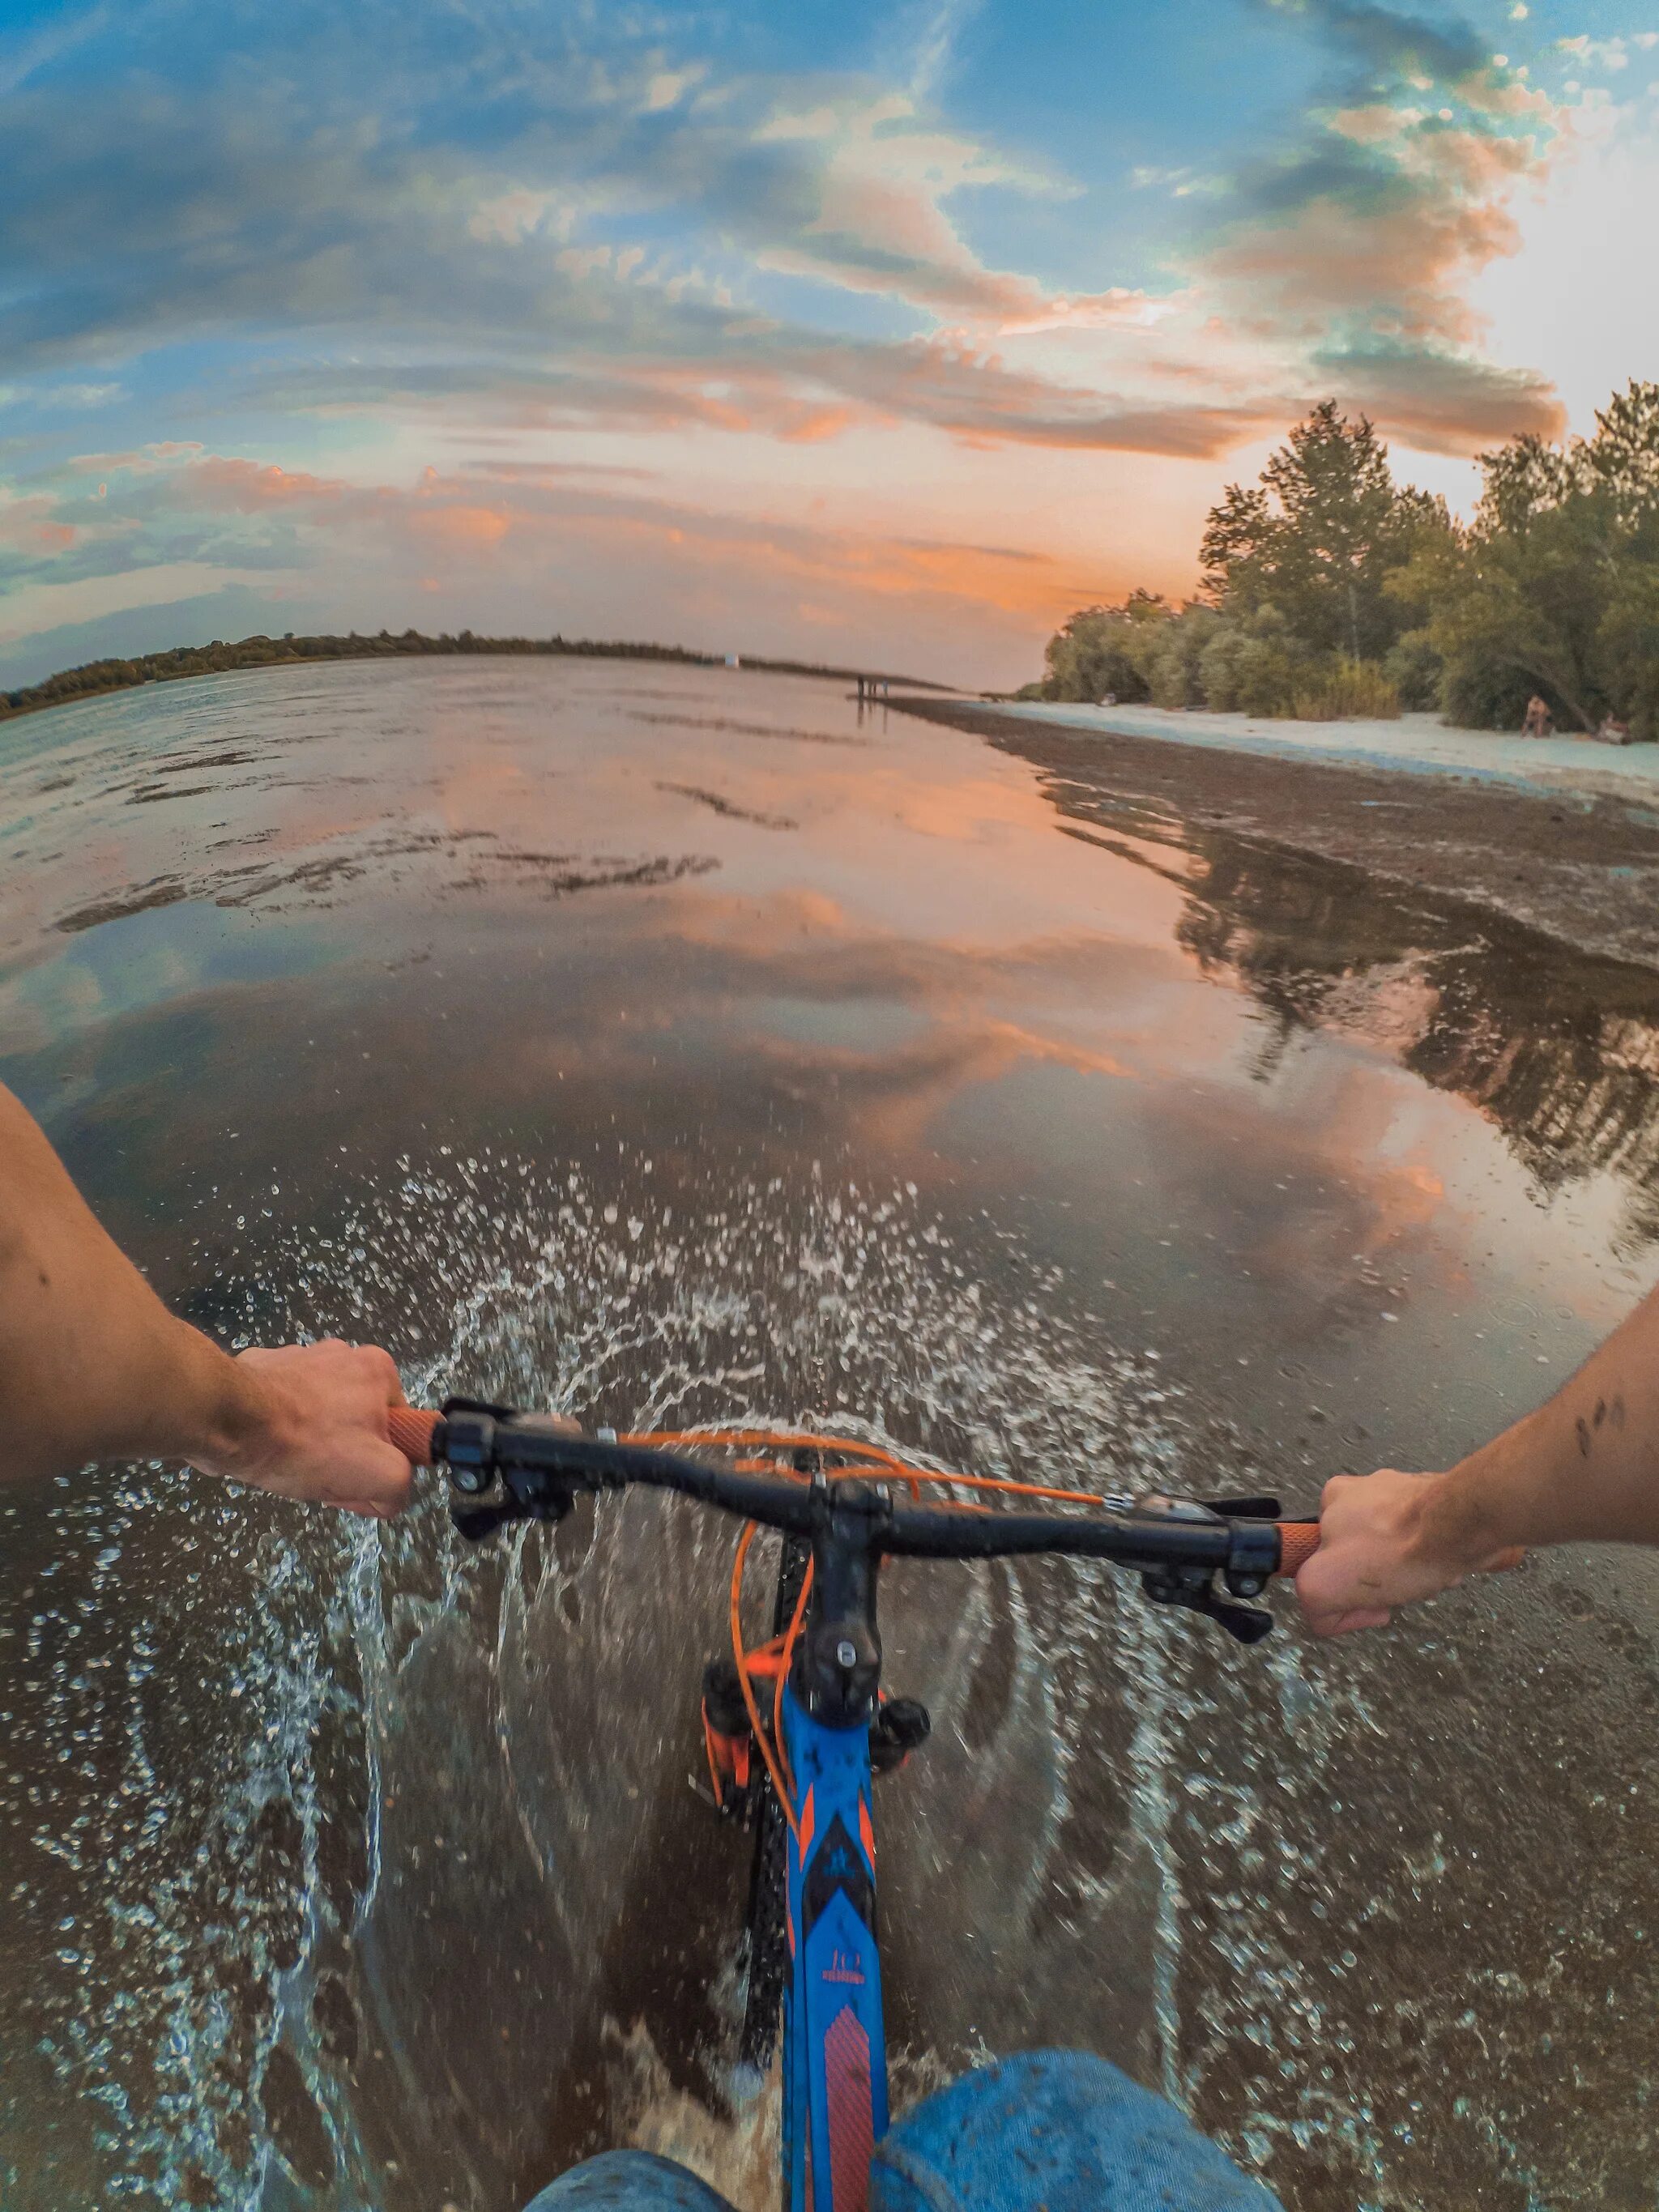 Велосипед у реки. Река велосипед зонт. Велосипед из речки. Отражение велосипедиста в реке. River bike